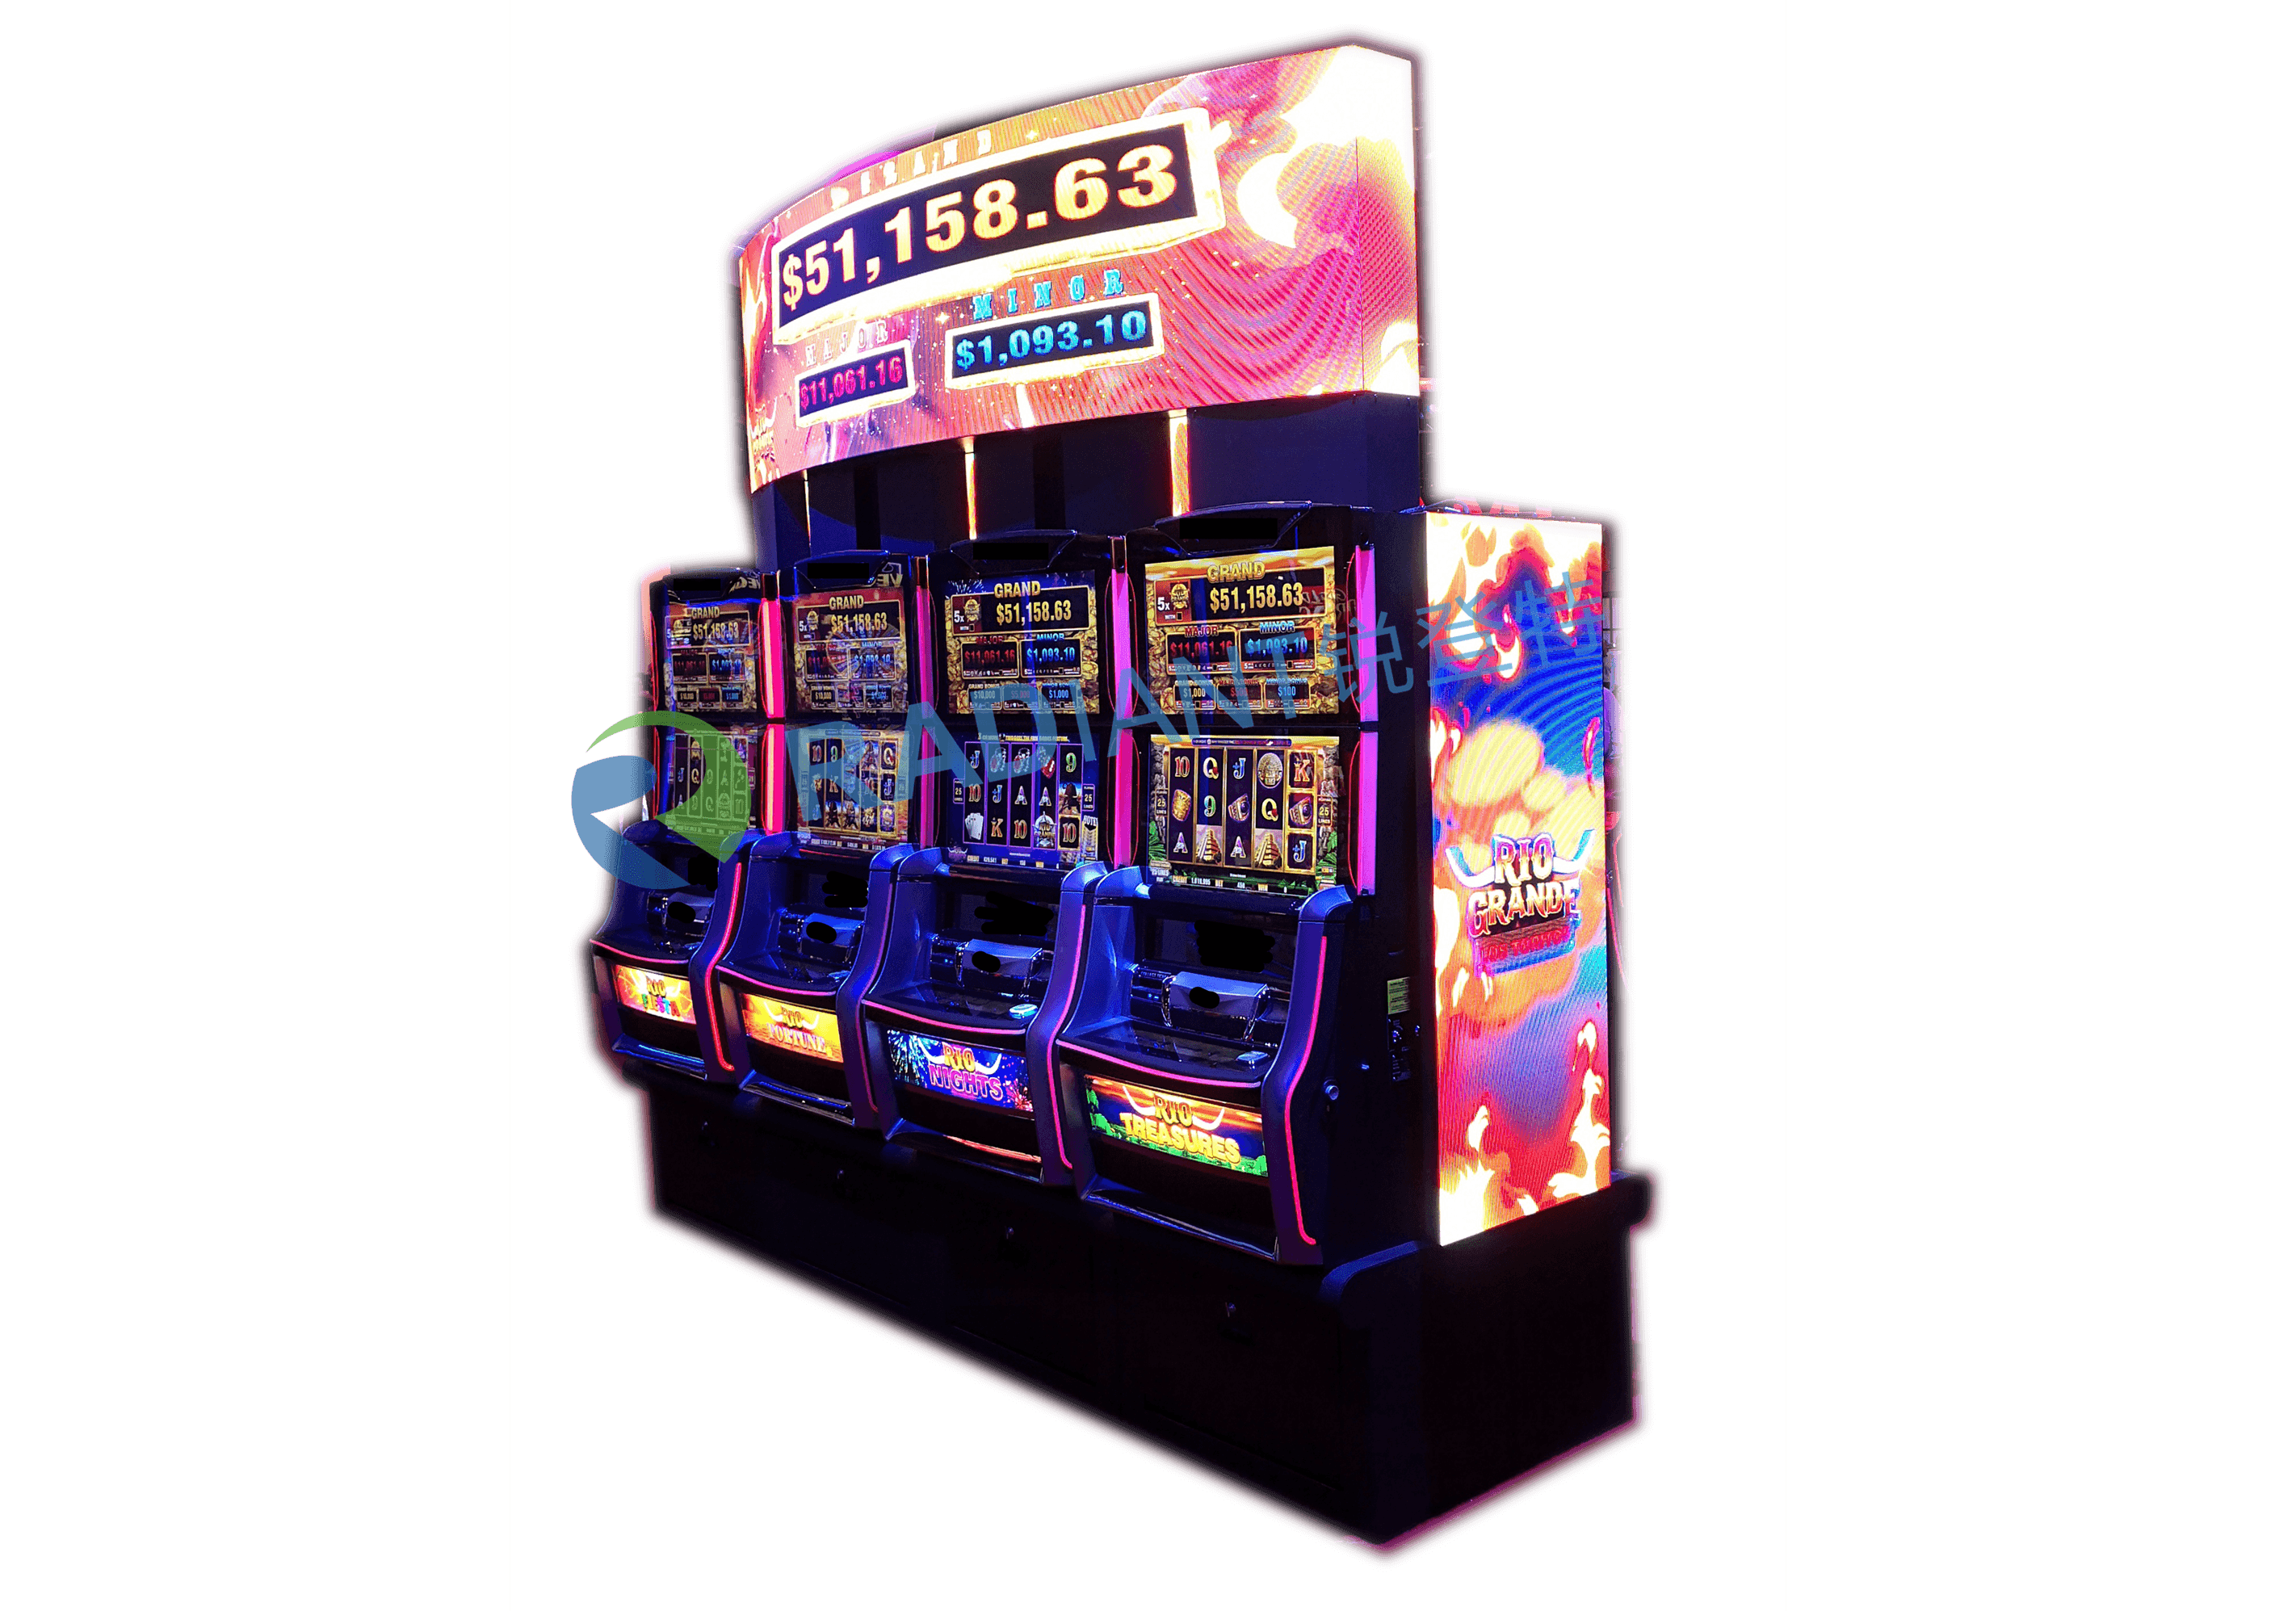 Ellipse-LED-Anzeige für Spielautomaten-LED-Schild in Casino-Glücksspieleinrichtungen